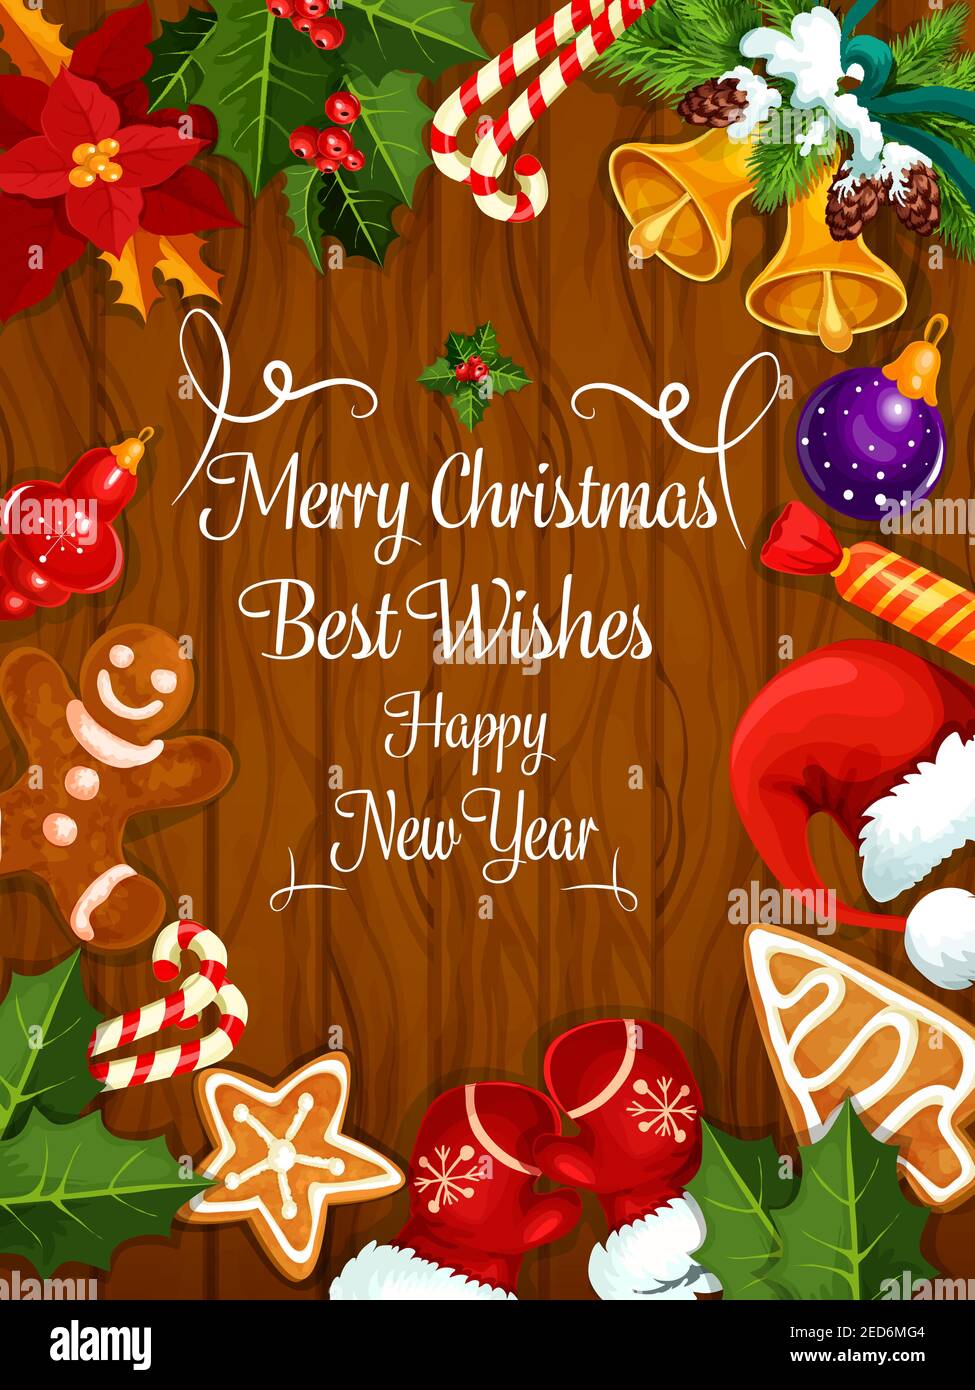 Allegro biglietto di auguri di Natale, poster dei migliori auguri di Capodanno con ornamenti dell'albero di natale, corona di agrifoglio, pan di zenzero, borsa da regalo, candela, cristma Illustrazione Vettoriale